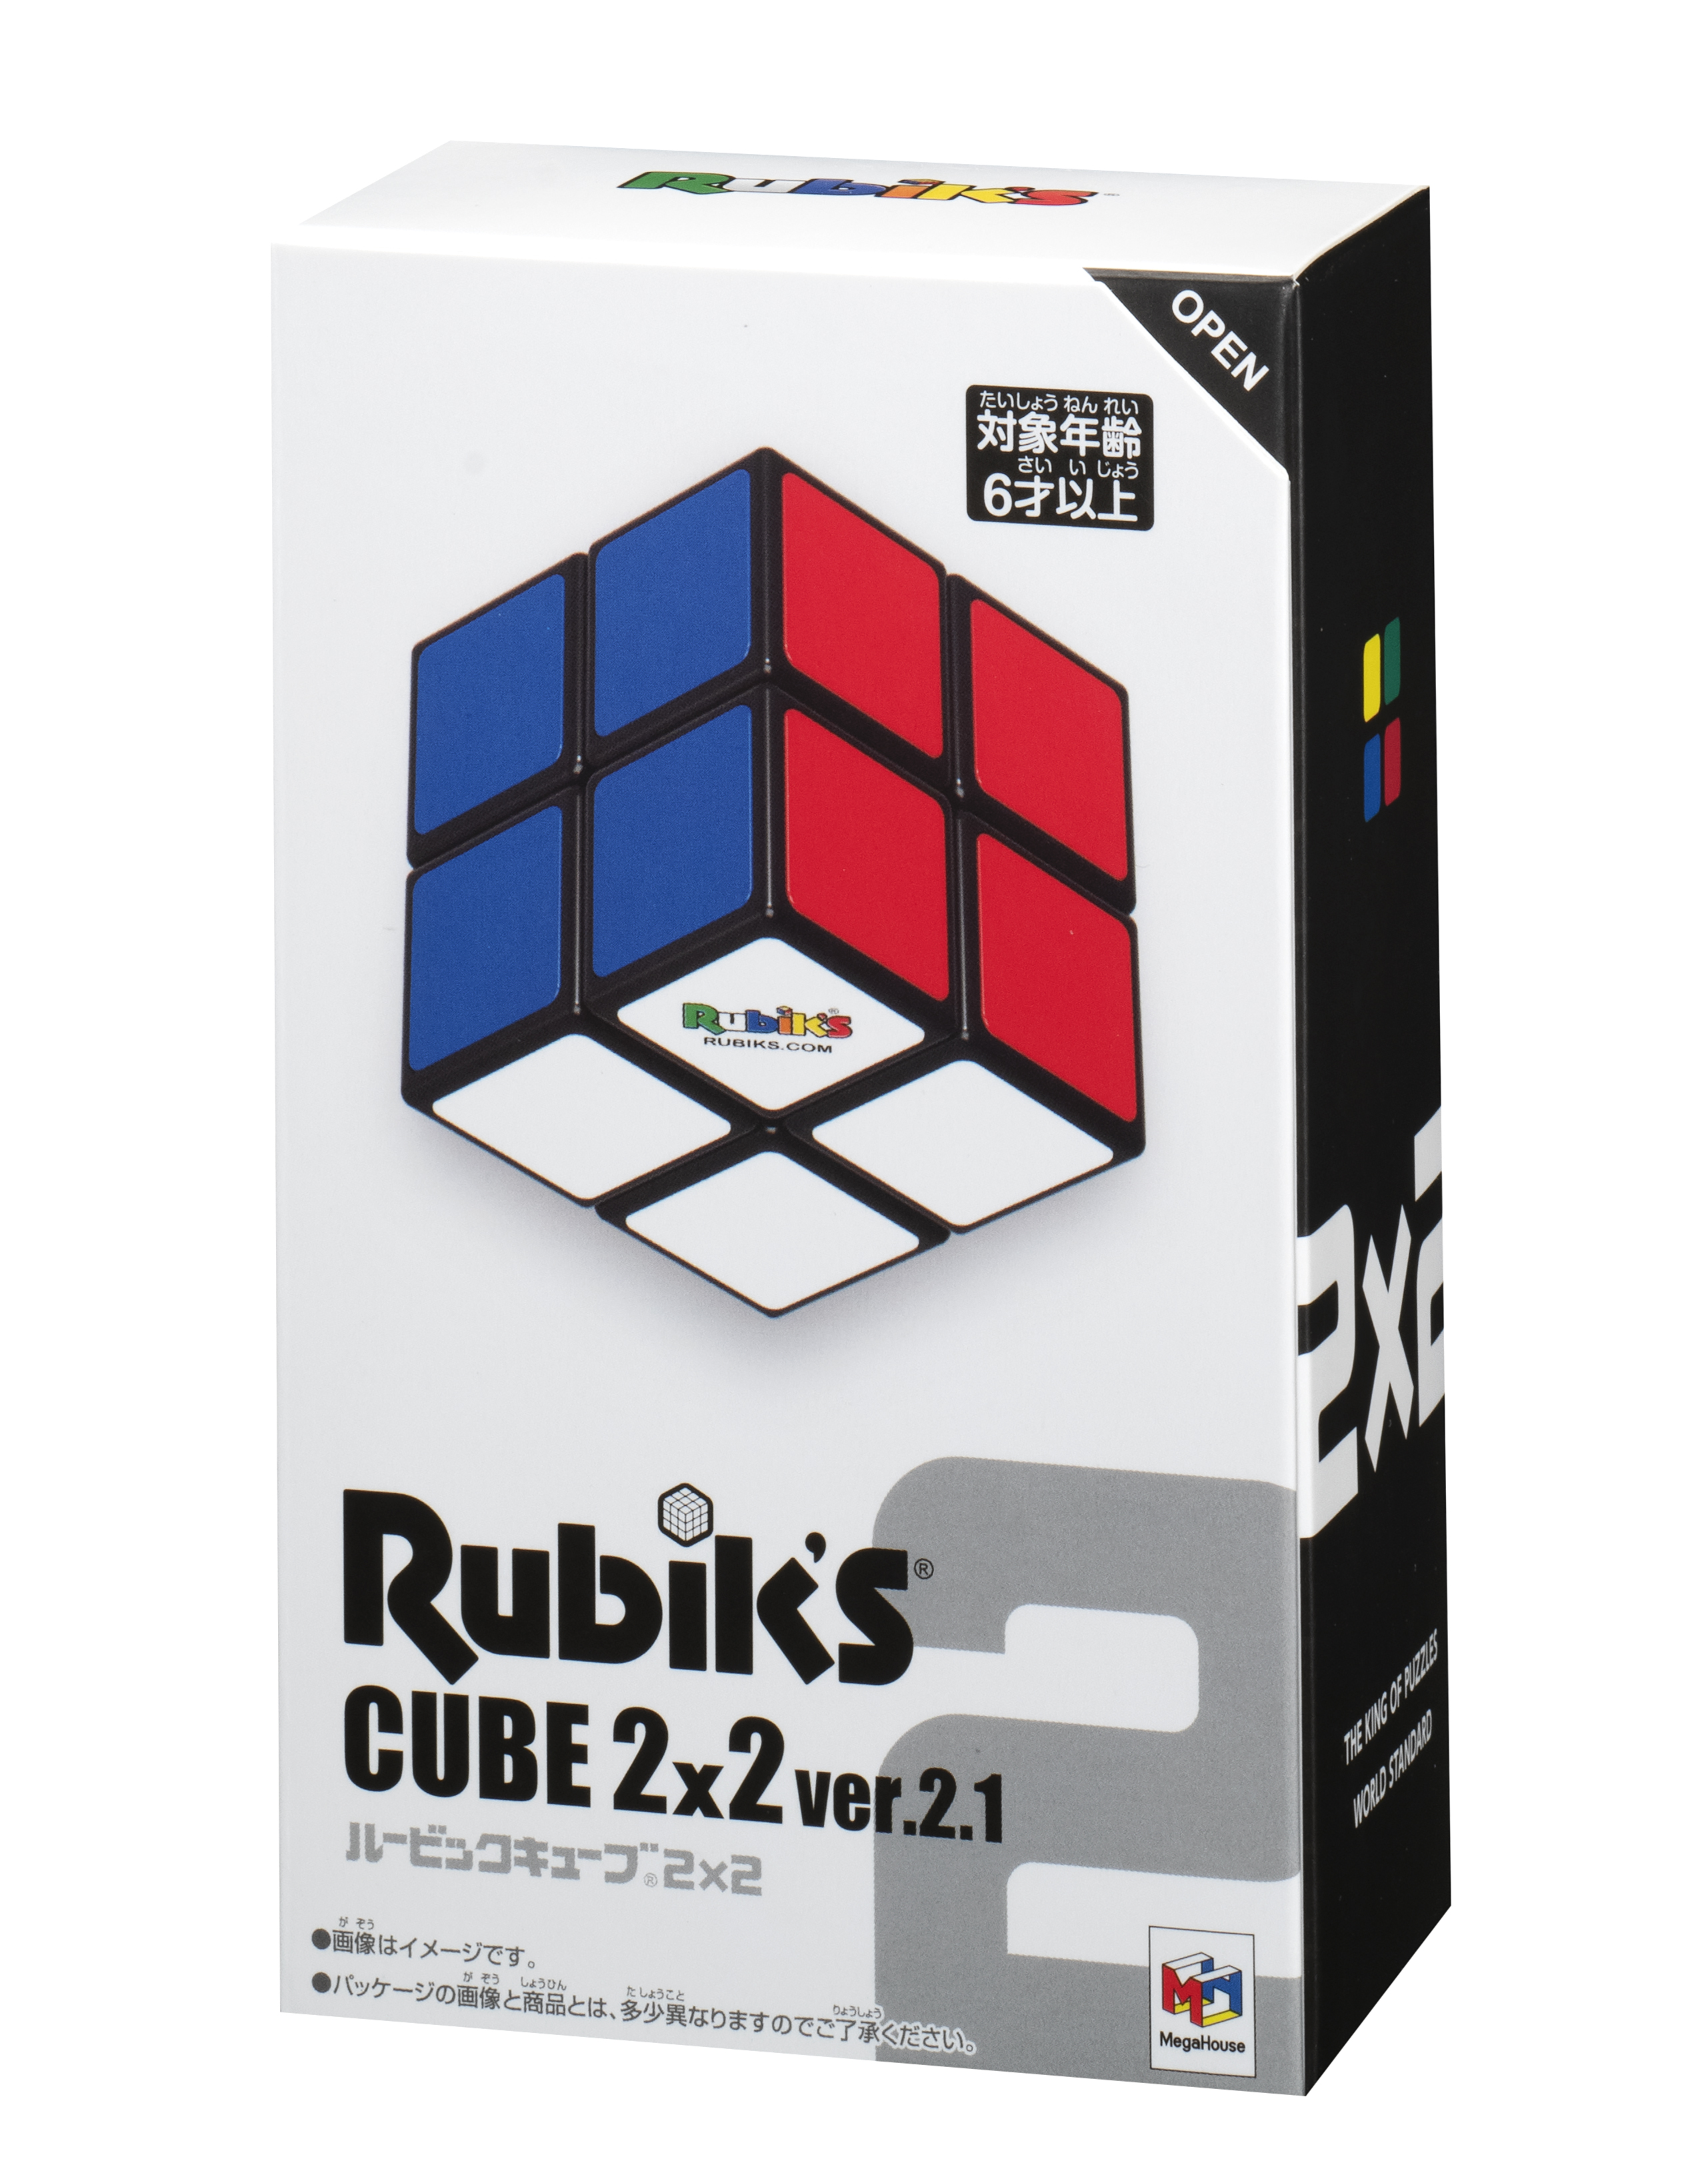  ルービックキューブ2×2 ver.2.1【公式ライセンス商品】